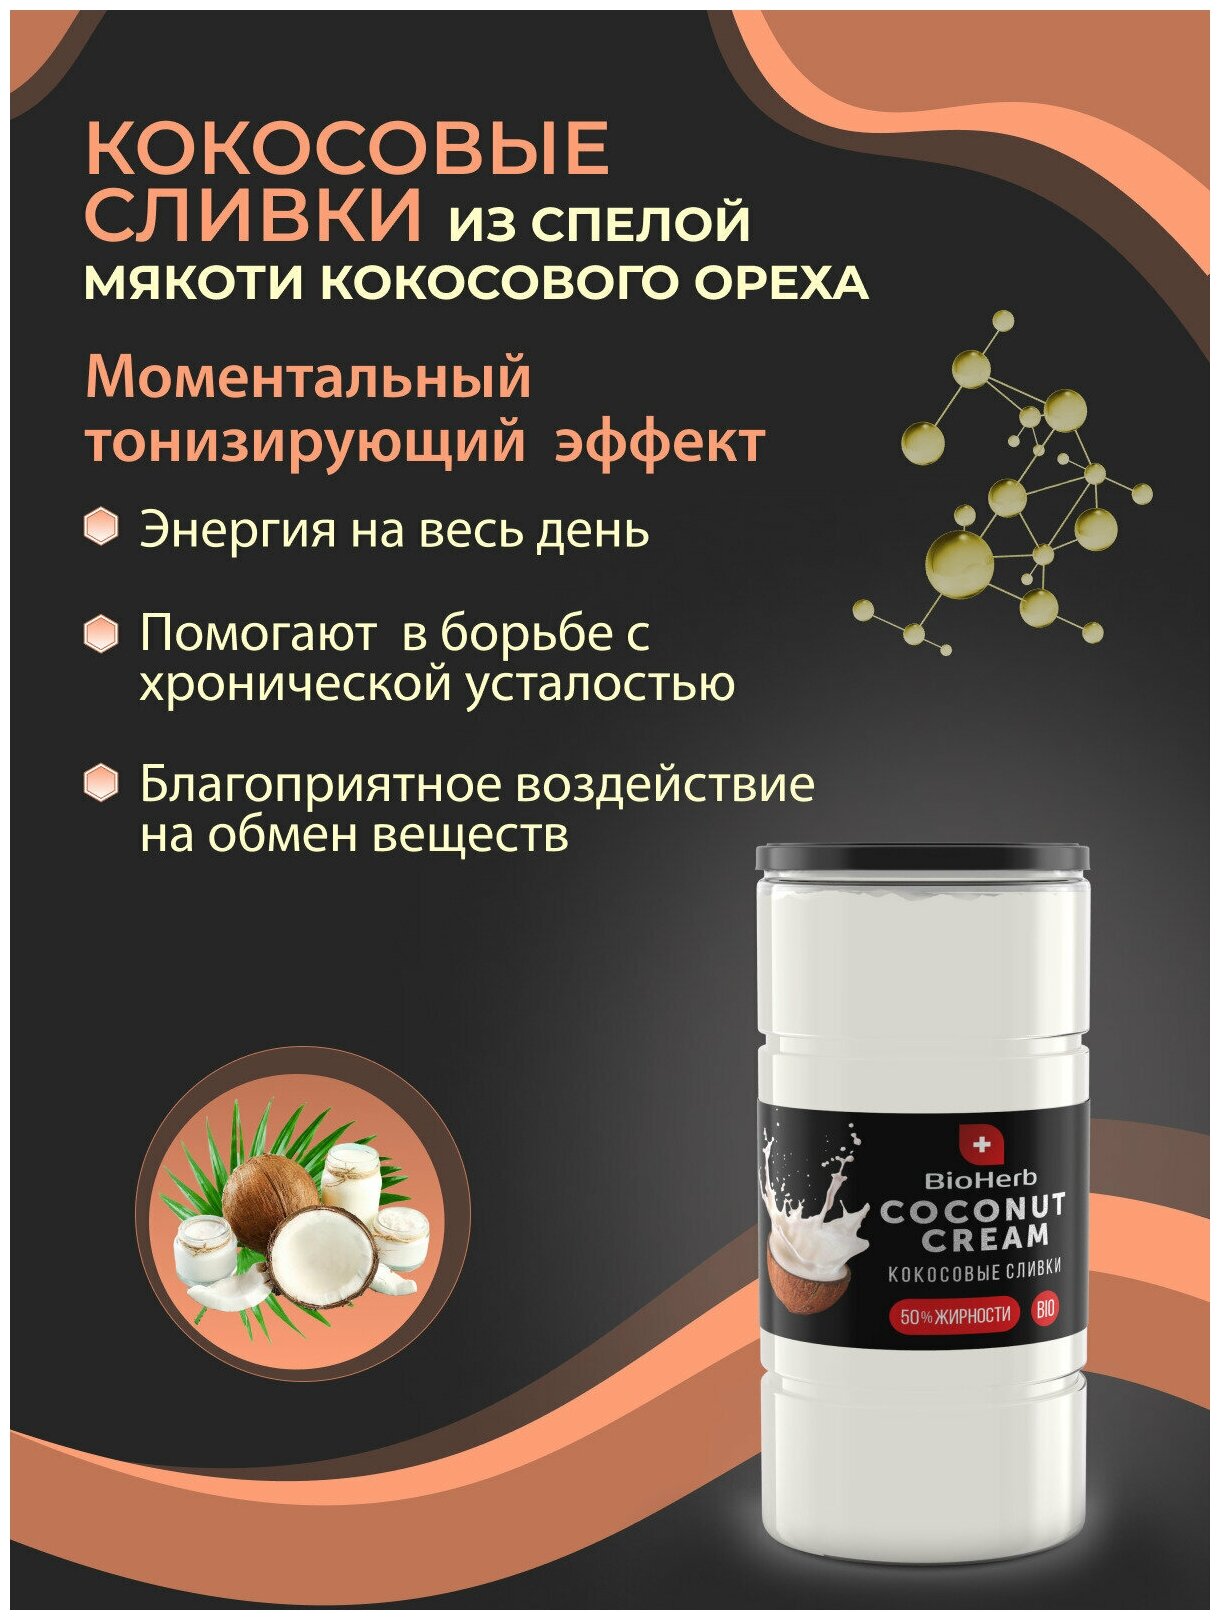 BioHerb Кокосовые сливки сухие, для кофе и чая, растительные, 95% мякоти кокоса, 500 г